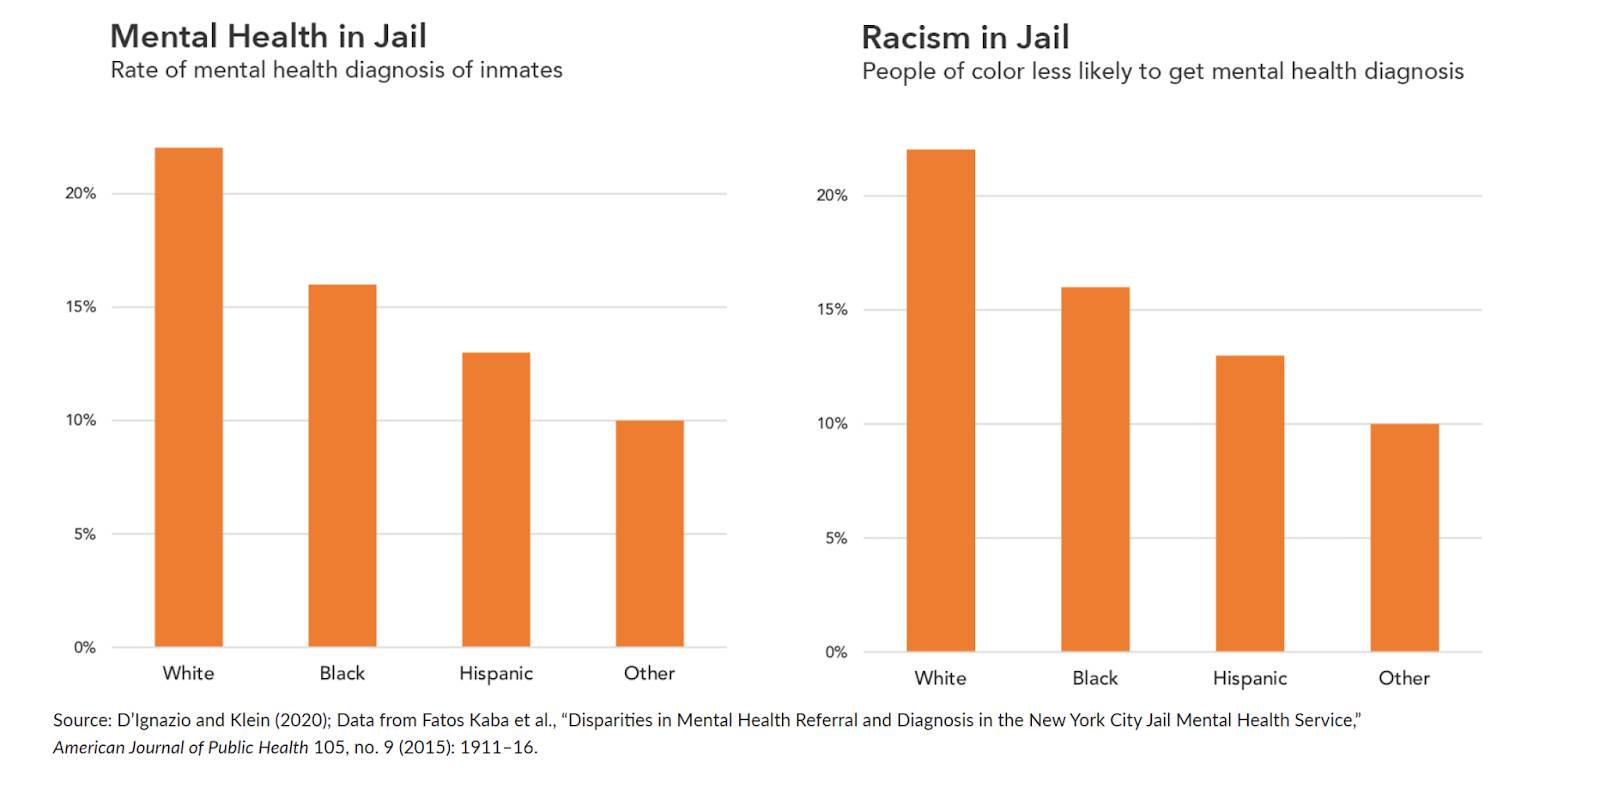 백인, 흑인, 히스패닉 및 기타 등의 범주별로 교도소 내 정신 건강 및 인종 차별 비율을 내림차순으로 보여 주는 차트.